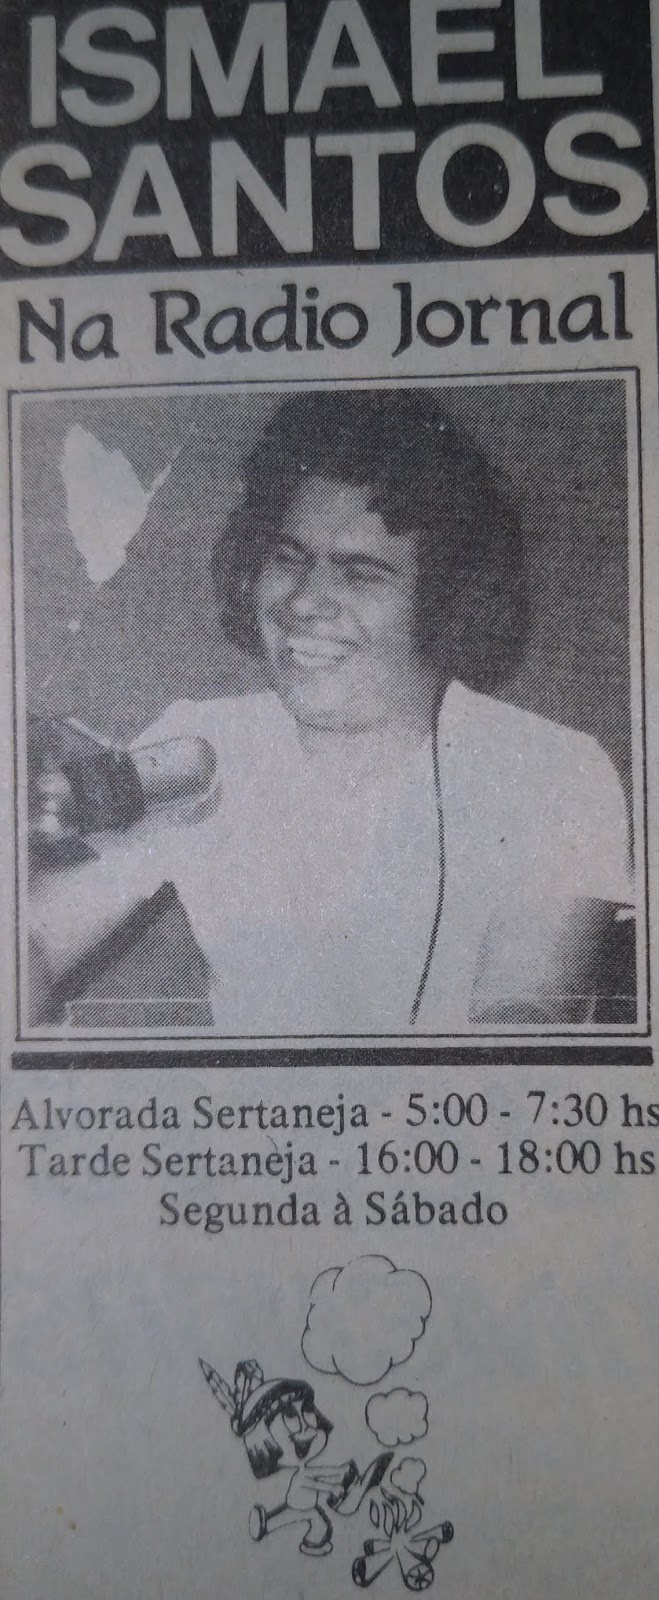 Ismael Santos na Rádio Jornal - Década de 1970